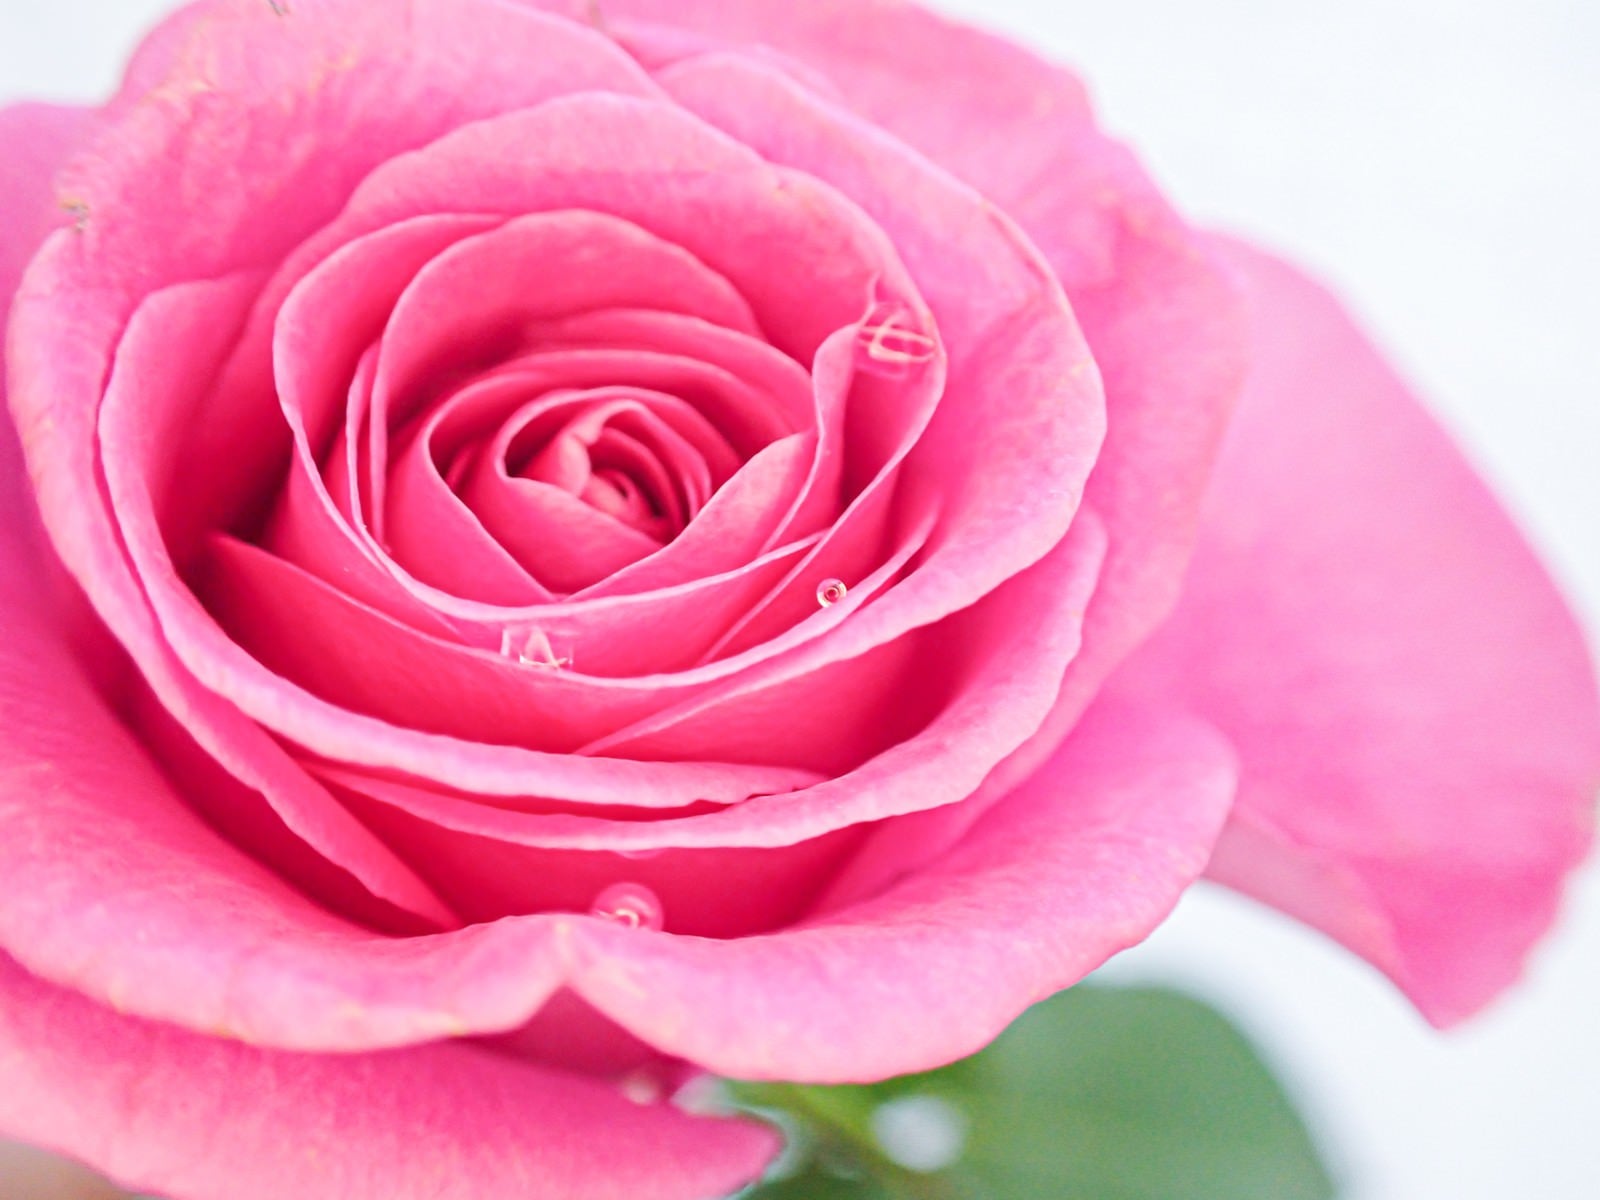 「水滴とピンク色の薔薇」の写真